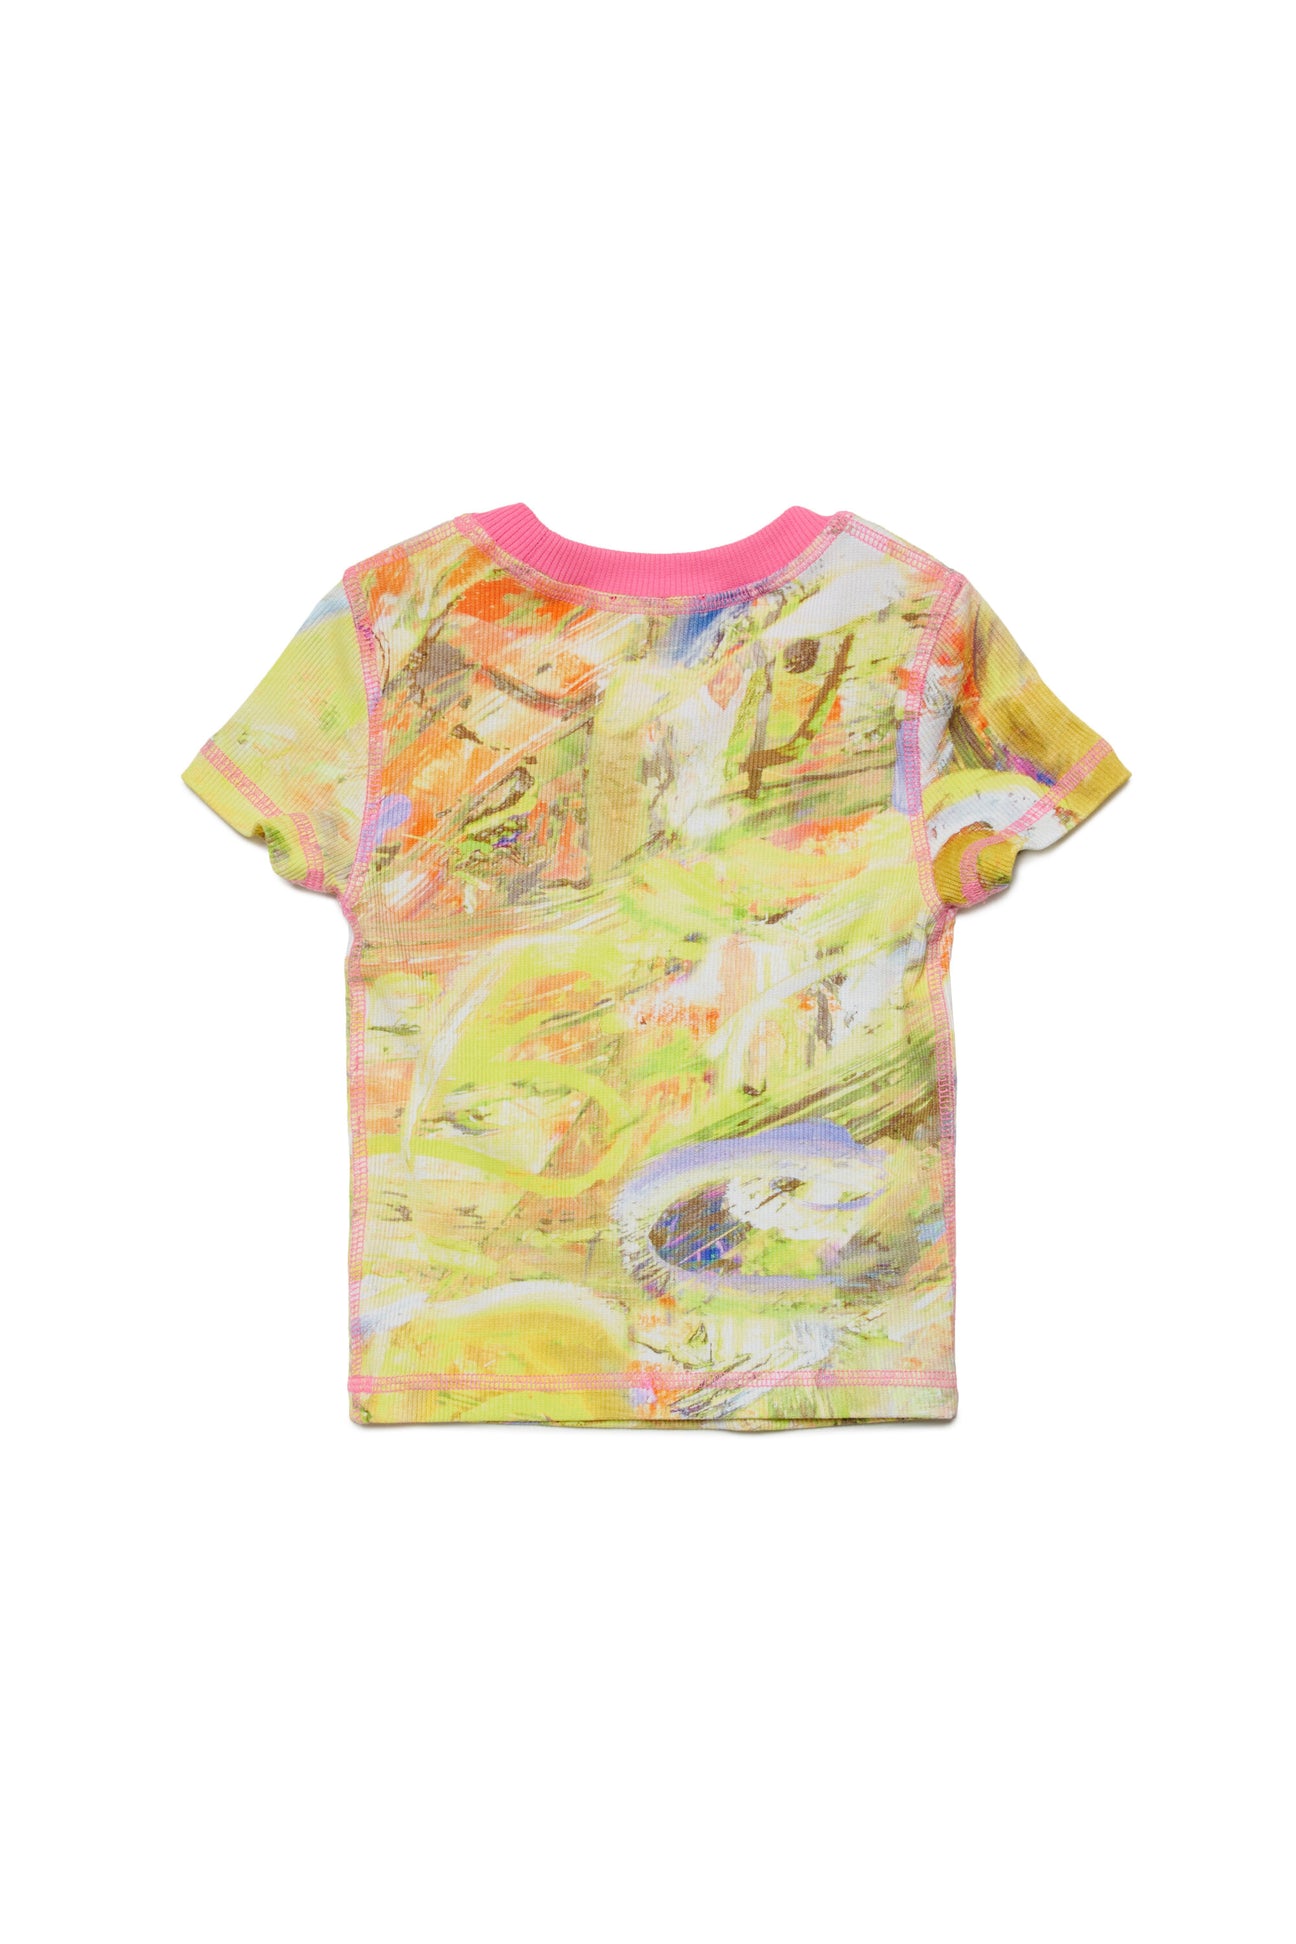 Abstract allover t-shirt Abstract allover t-shirt